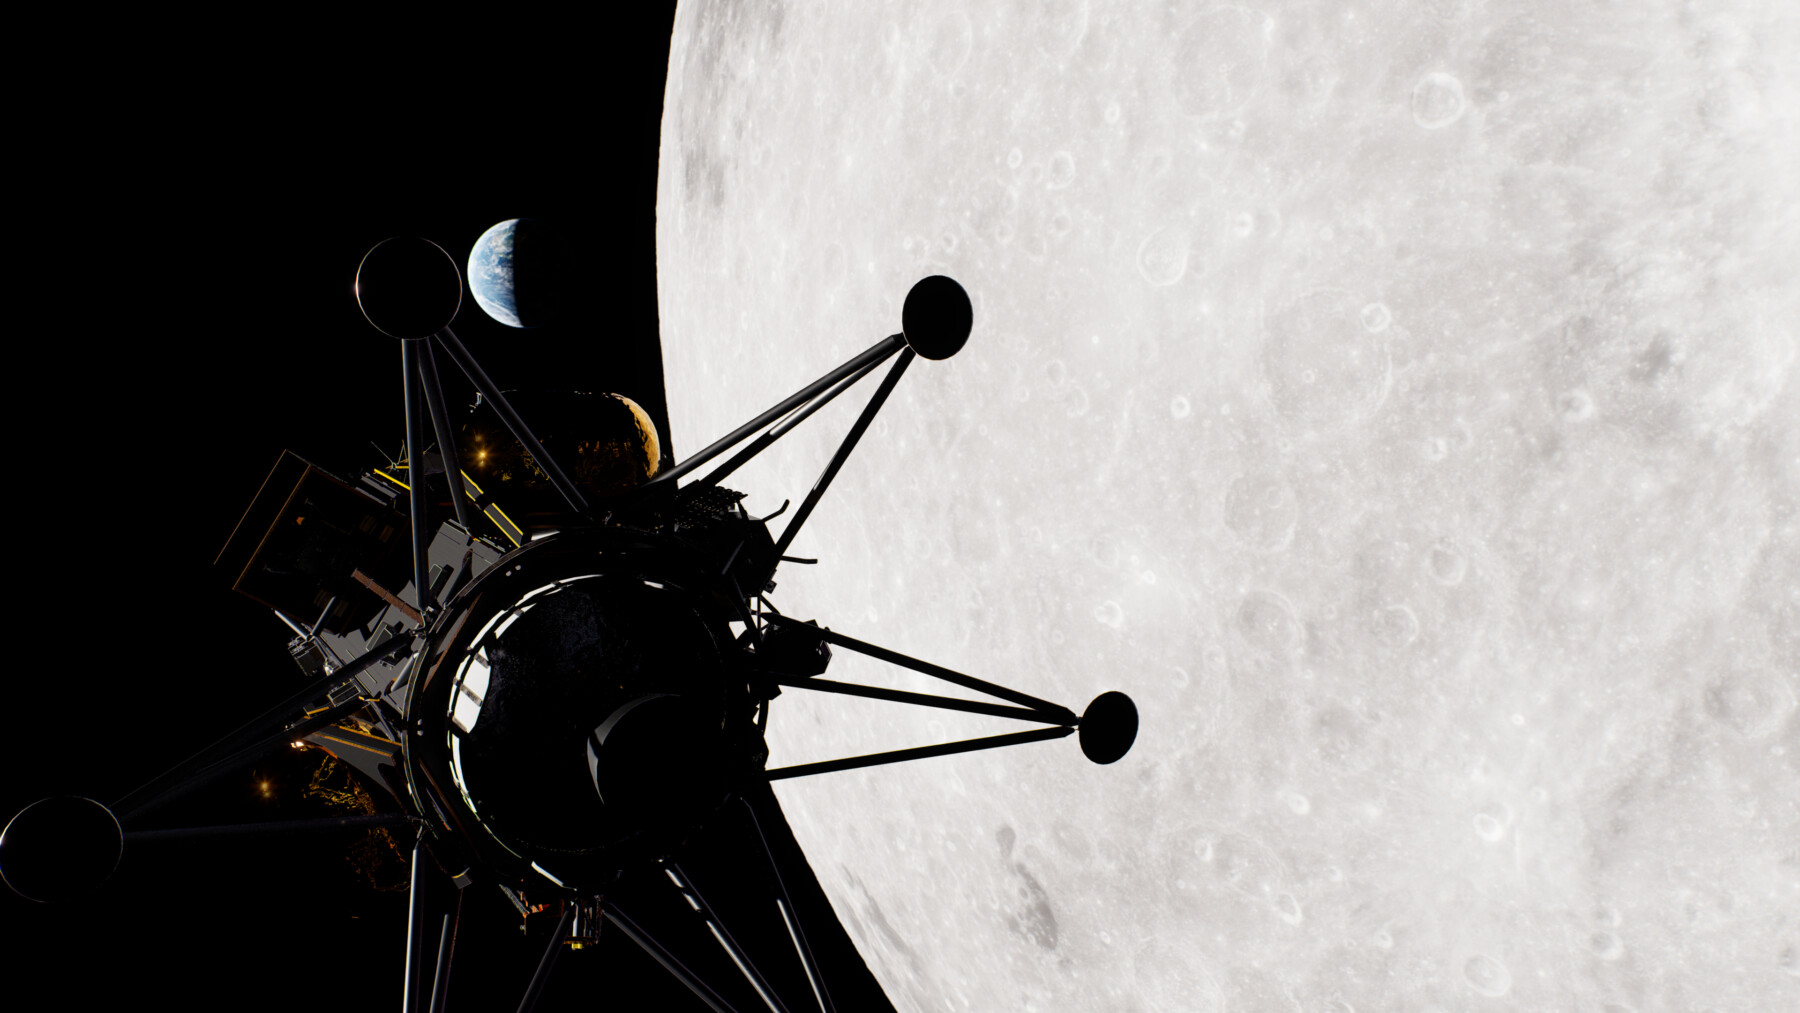 Uma espaçonave voadora aparece em silhueta na frente de um planeta cinza.